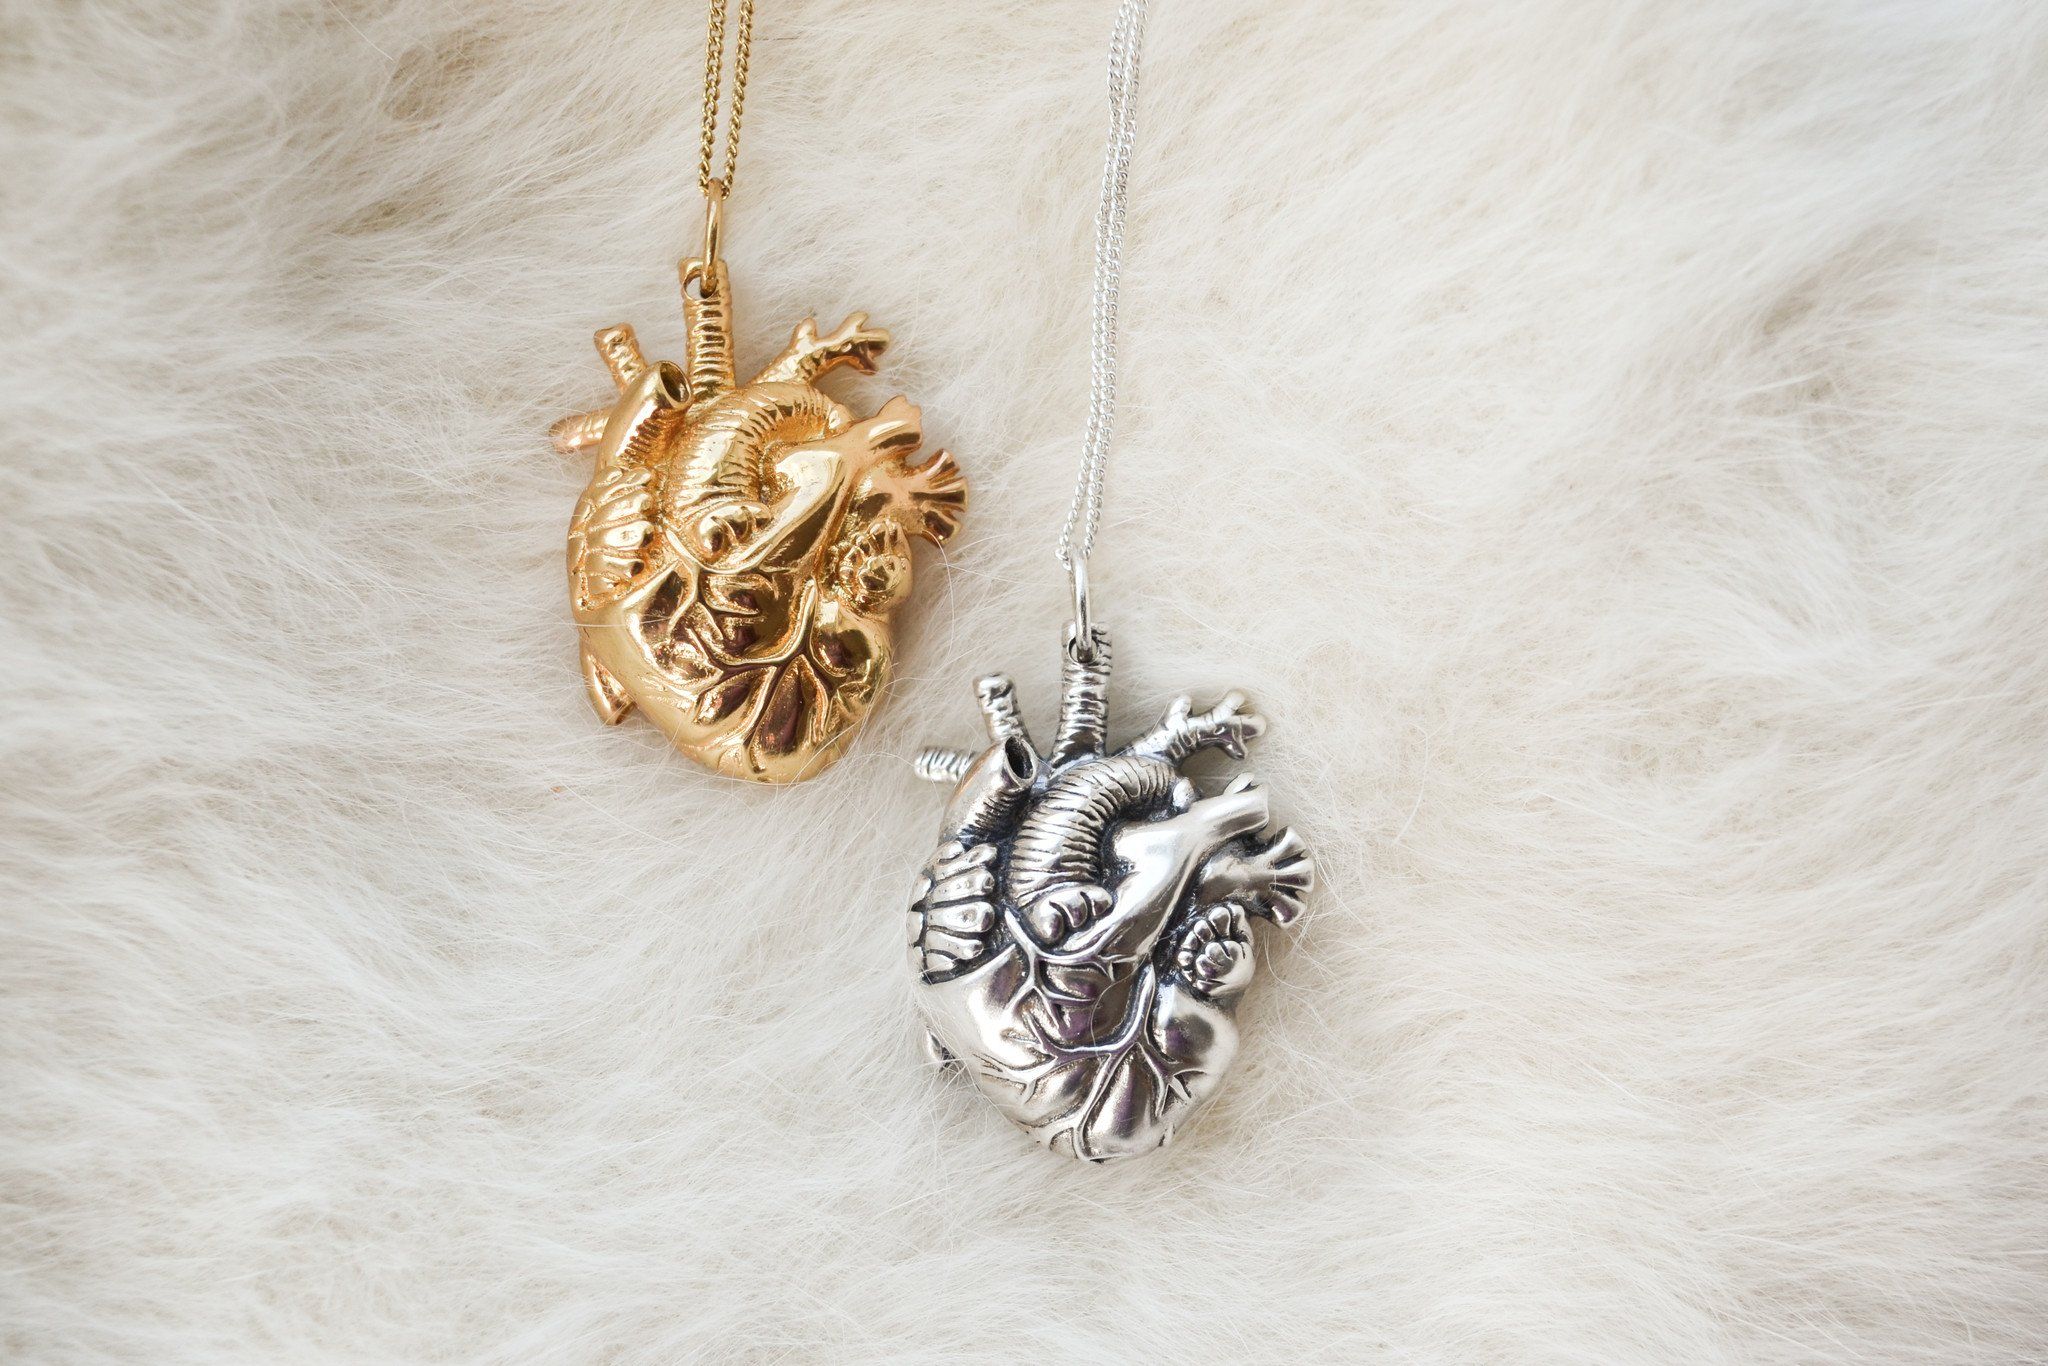 Handmade Nature Inspired Silver Jewelry - Human Heart Jewelry